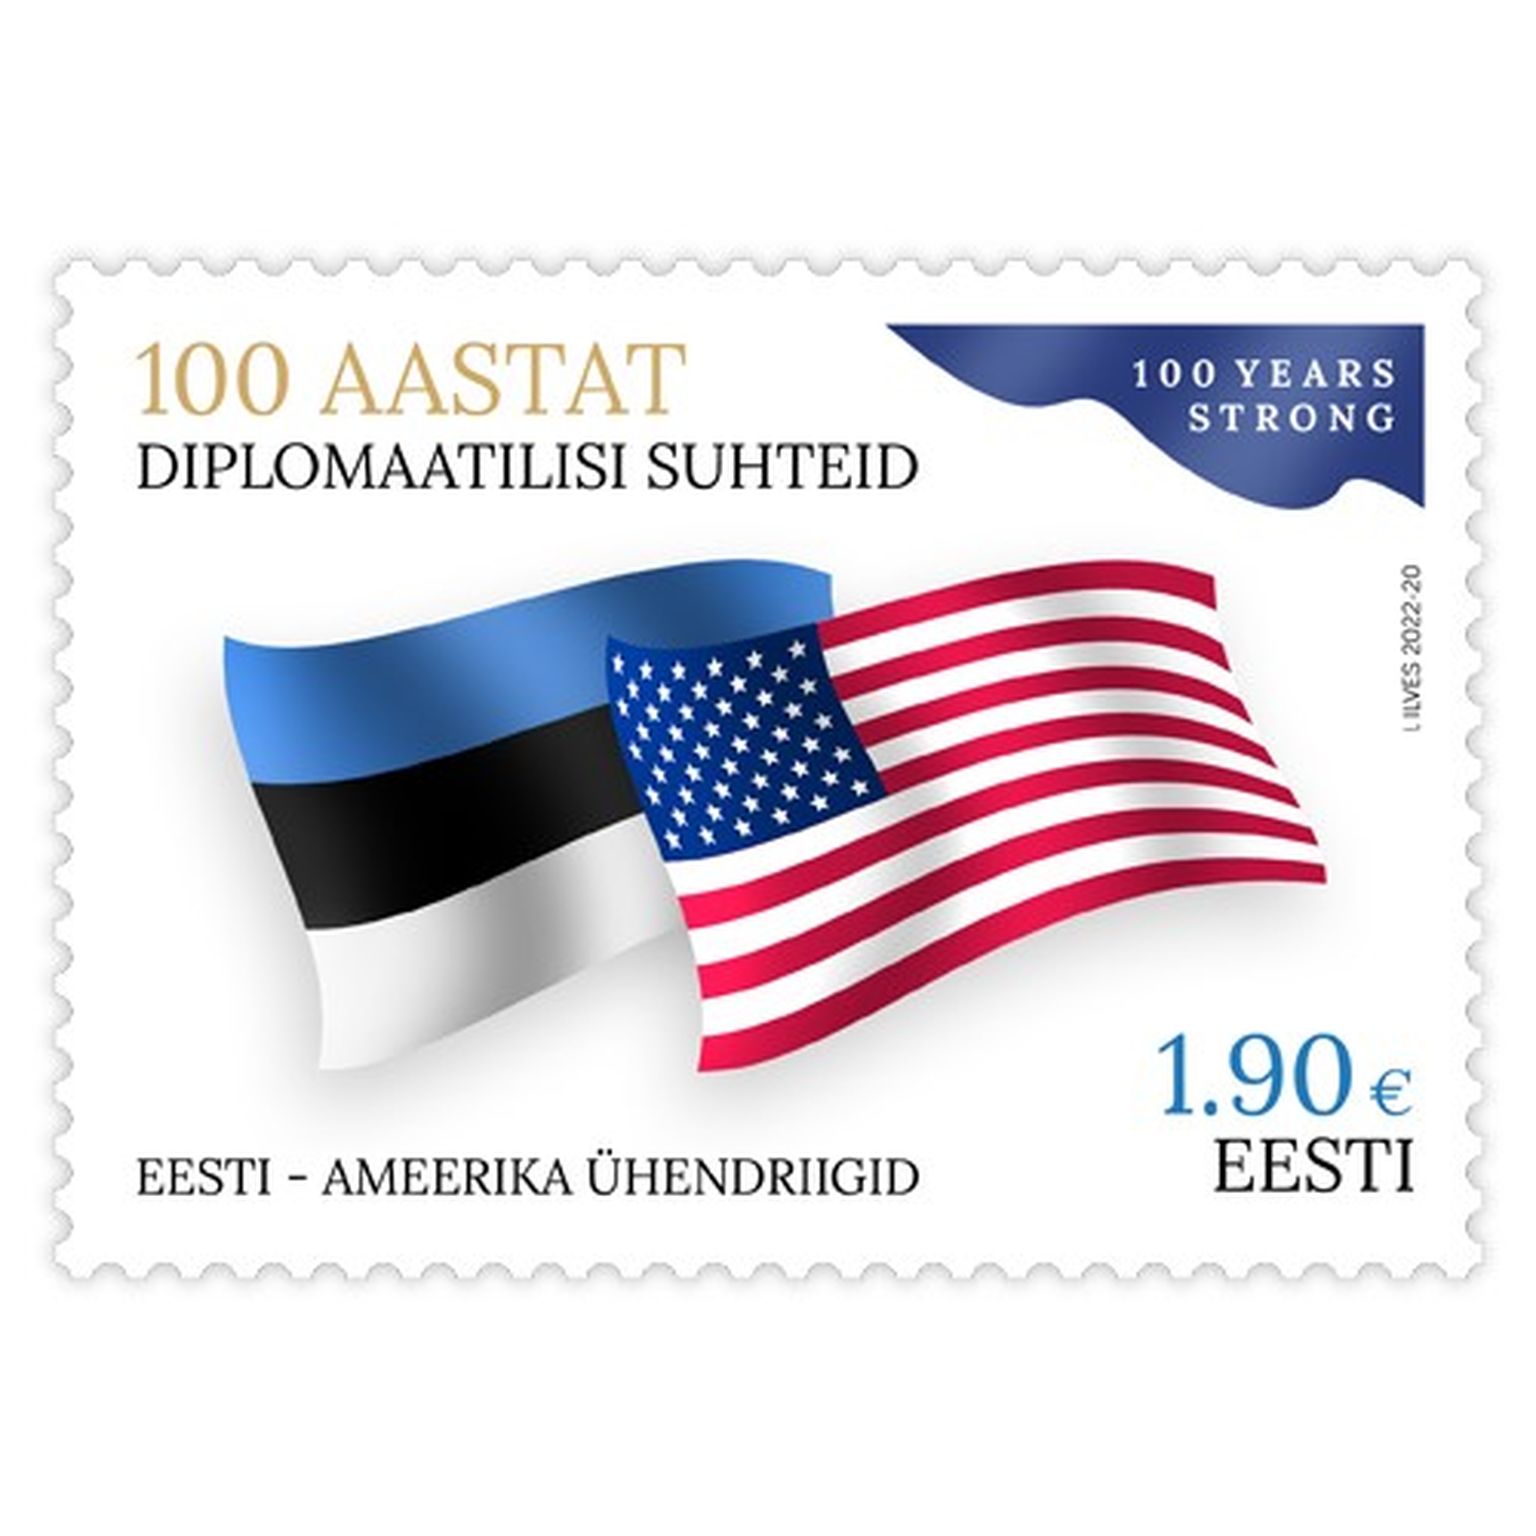 Почтовая марка будет выпущена в честь 100-летия установления дипломатических отношений между Эстонией и США.